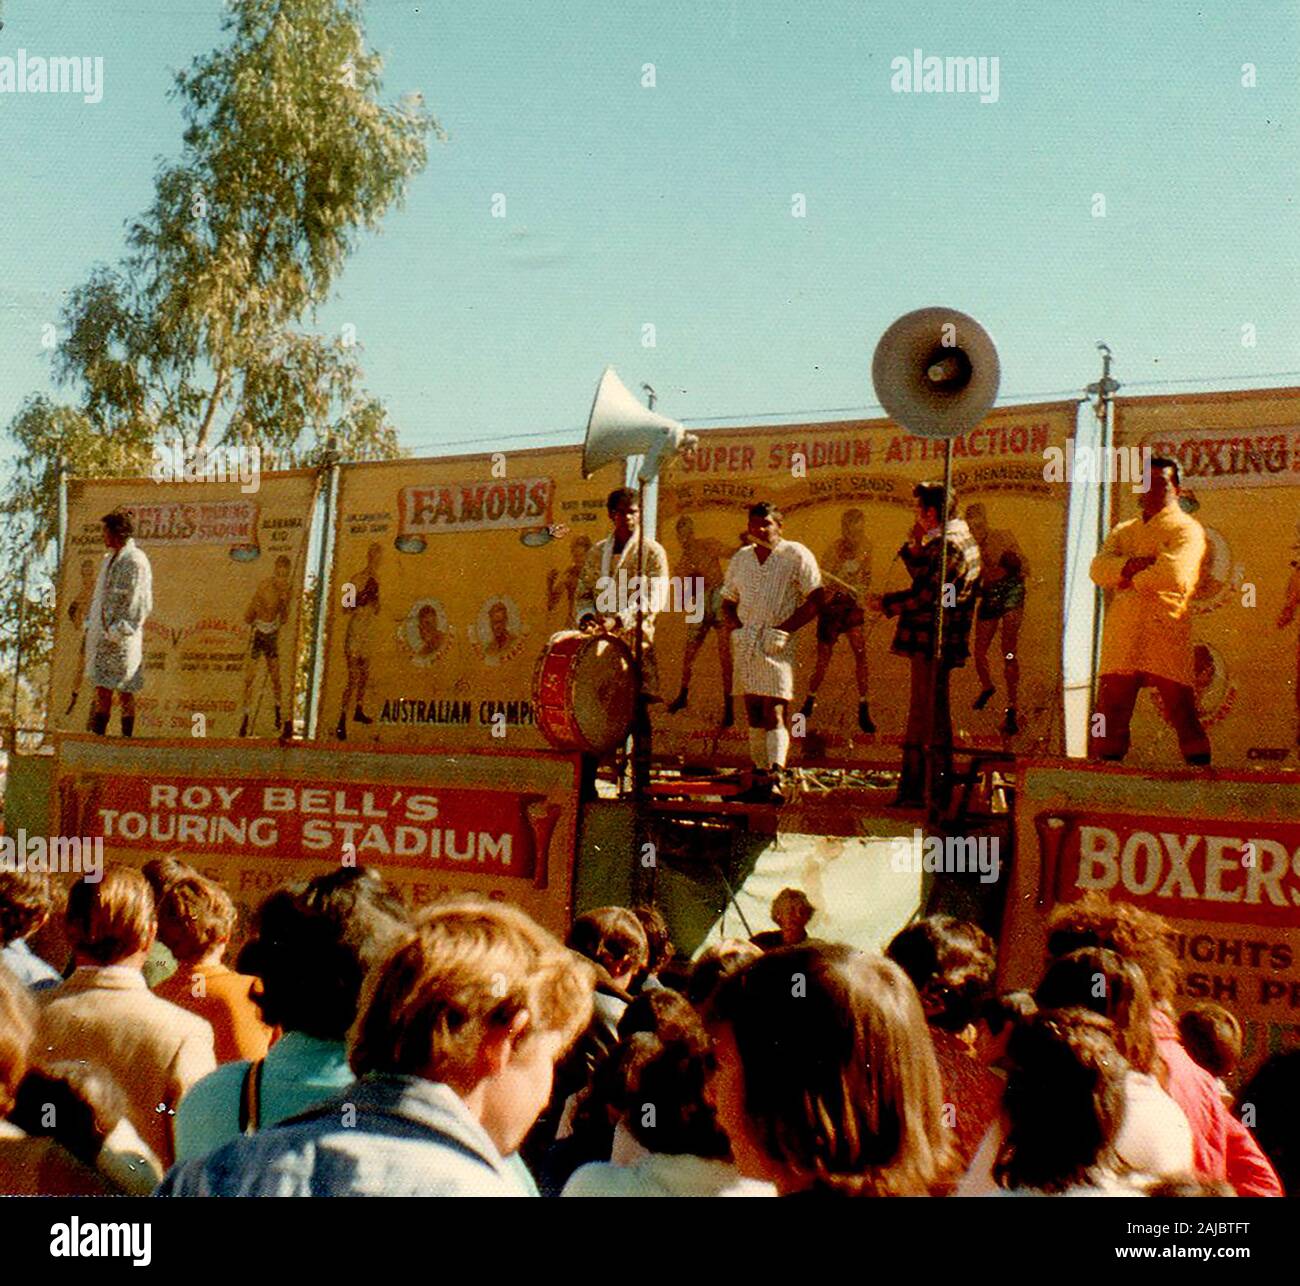 1972 Roy cloches voyageant Stadium (Stand de boxe) figurant dans Alice Springs showground, malgré une interdiction de boxe tente dans la plupart des régions de l'Australie autour de 1970 Banque D'Images